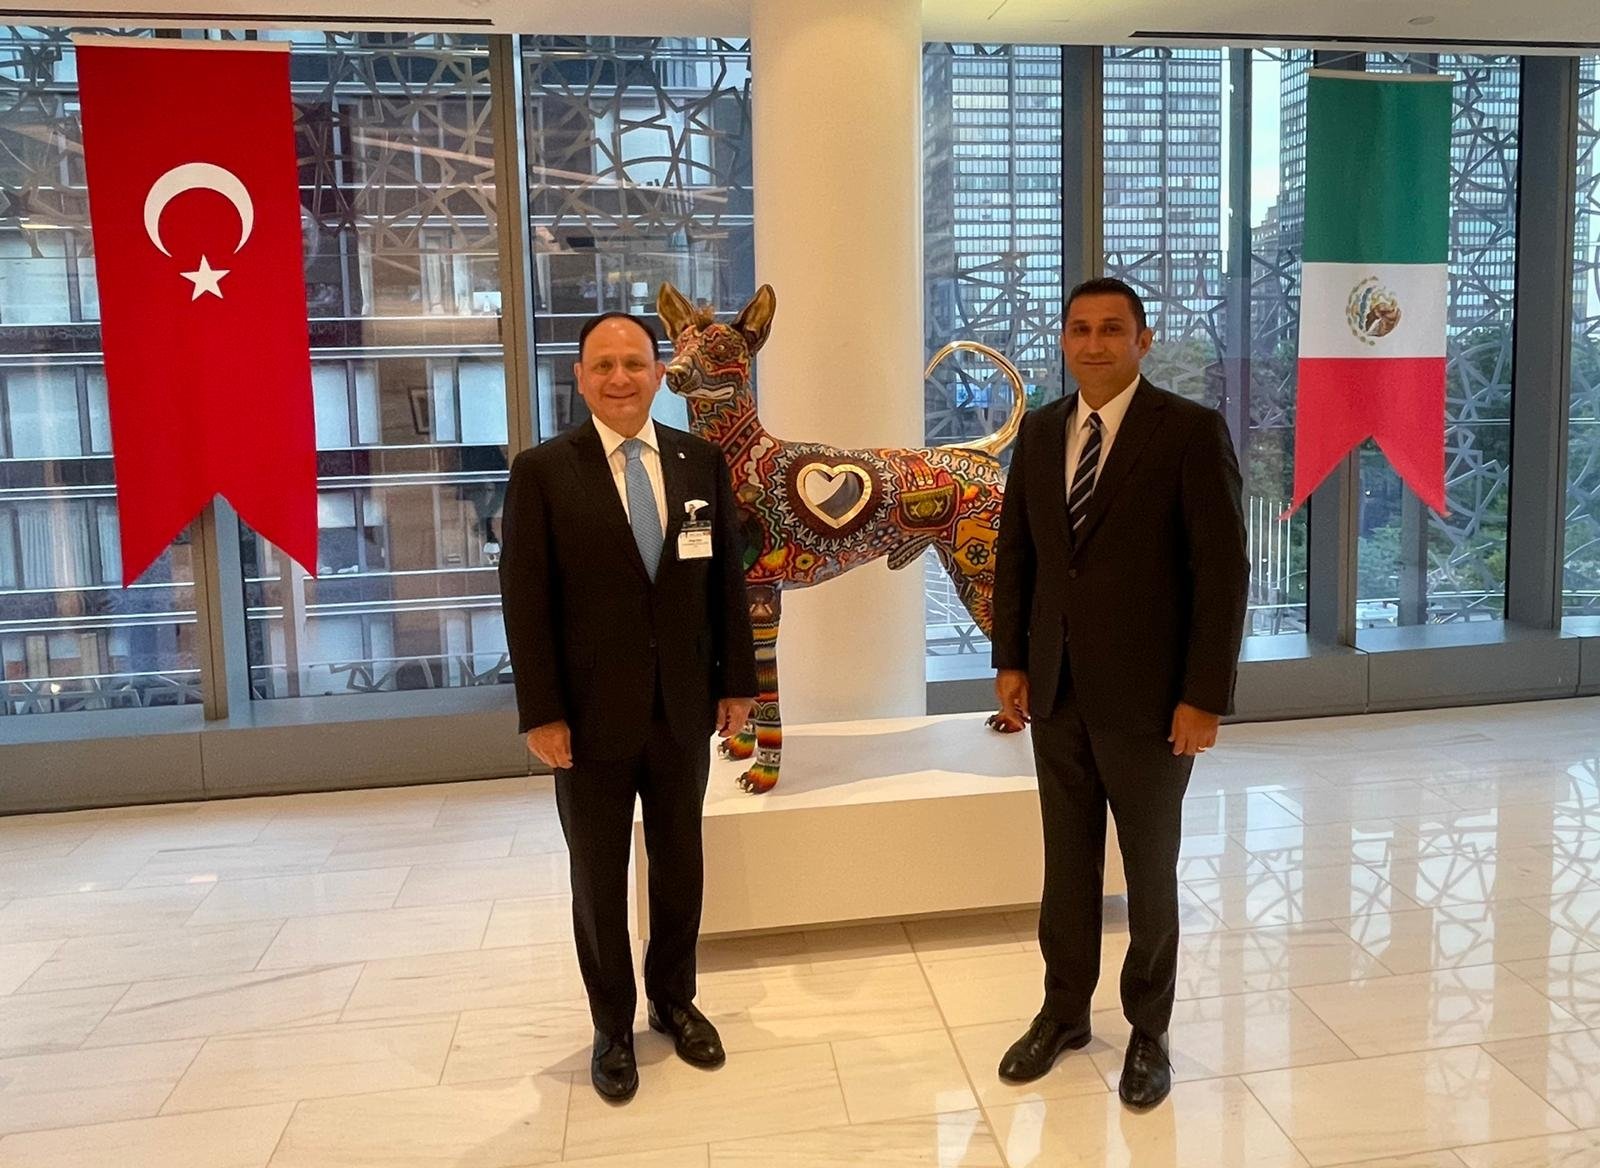 Türkiye'nin New York Başkonsolosluğu'nun Tarkivi'de düzenlediği etkinlik, kültürel etkileşimi teşvik etmek için Meksika toplumunu ağırlıyor, New York, Amerika Birleşik Devletleri, 28 Ağustos 2022. (AA Fotoğrafı)